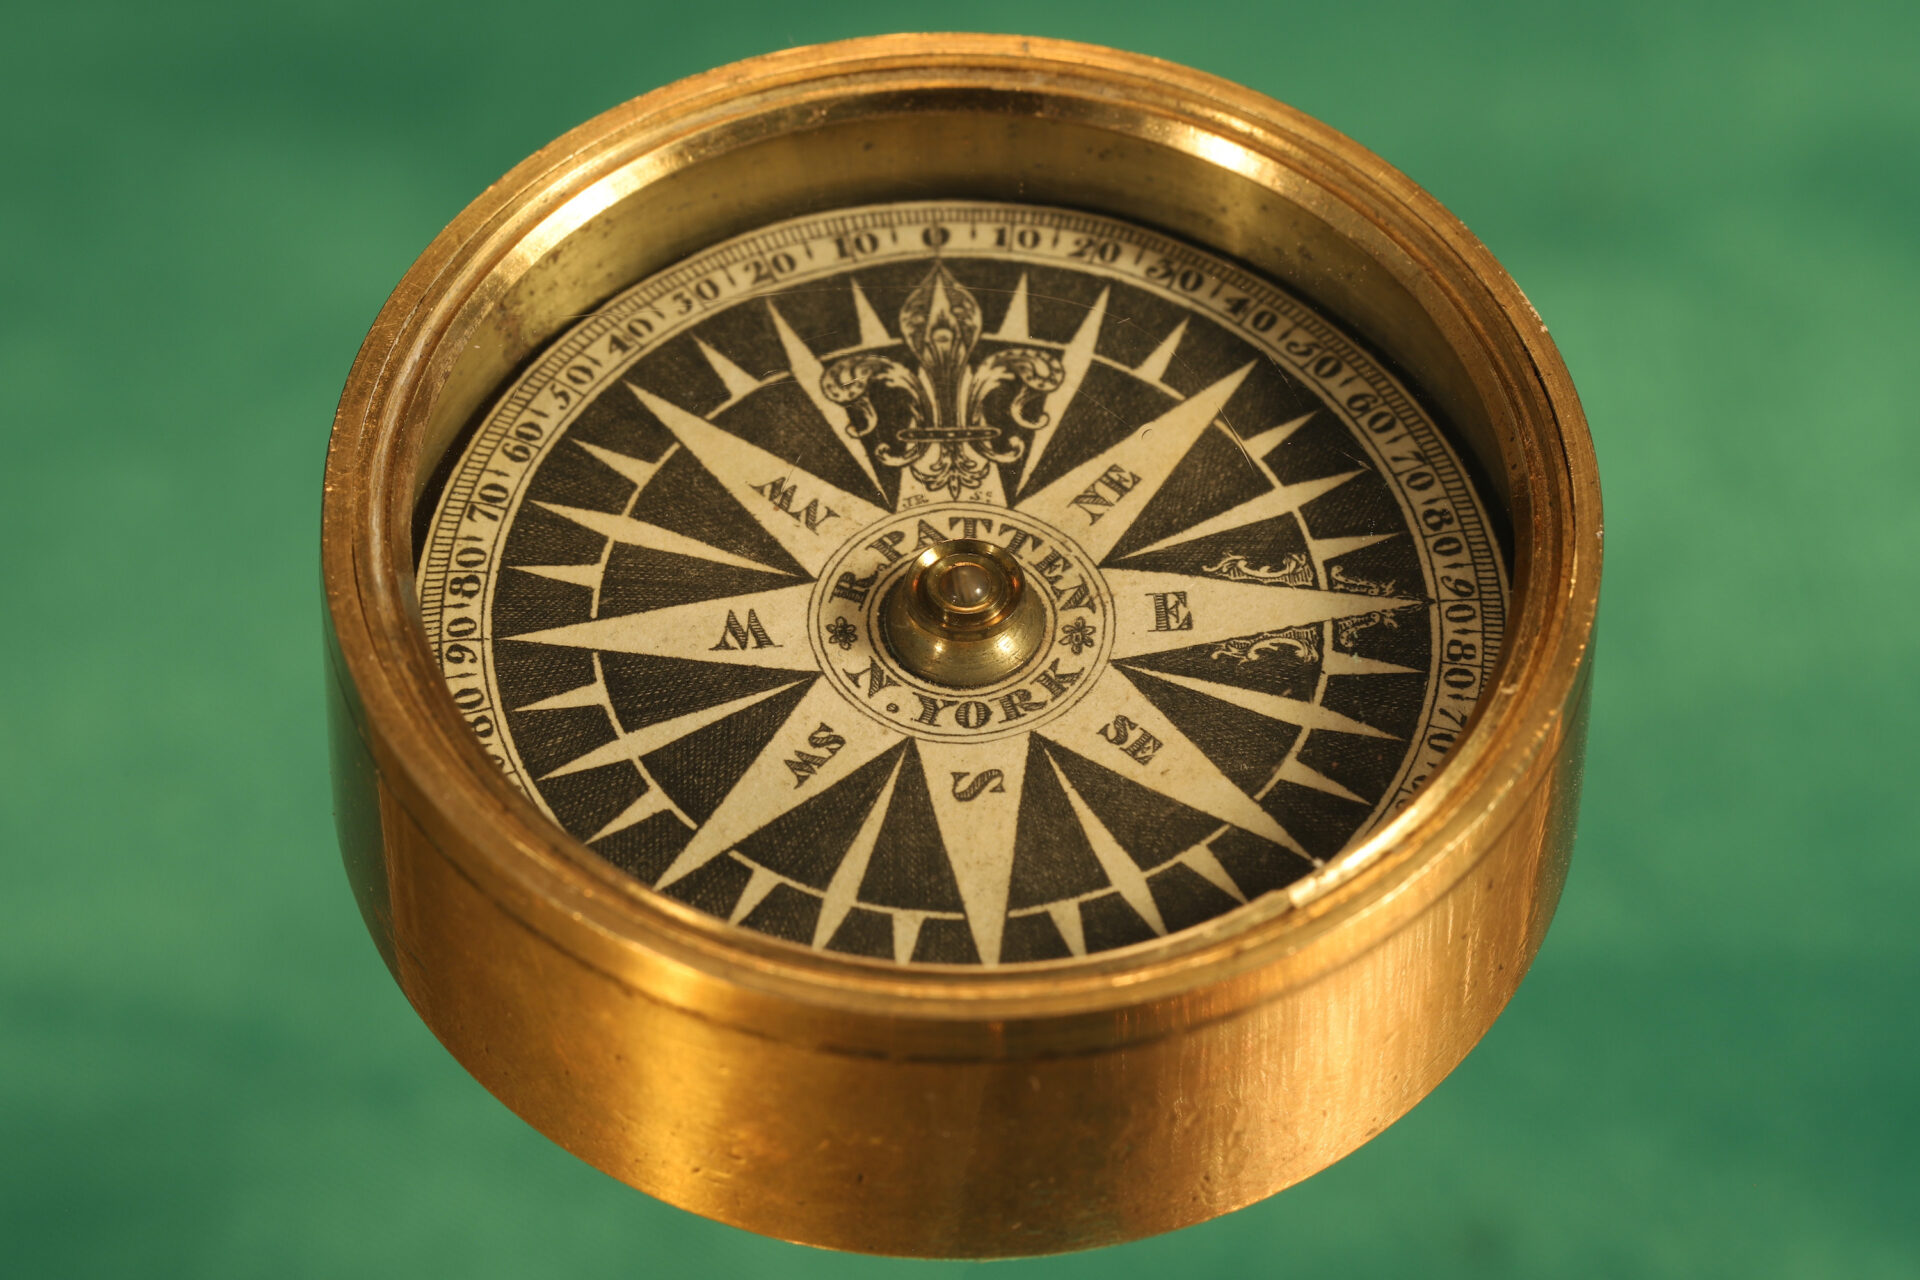 Richard Patten Nautical Compass_5a